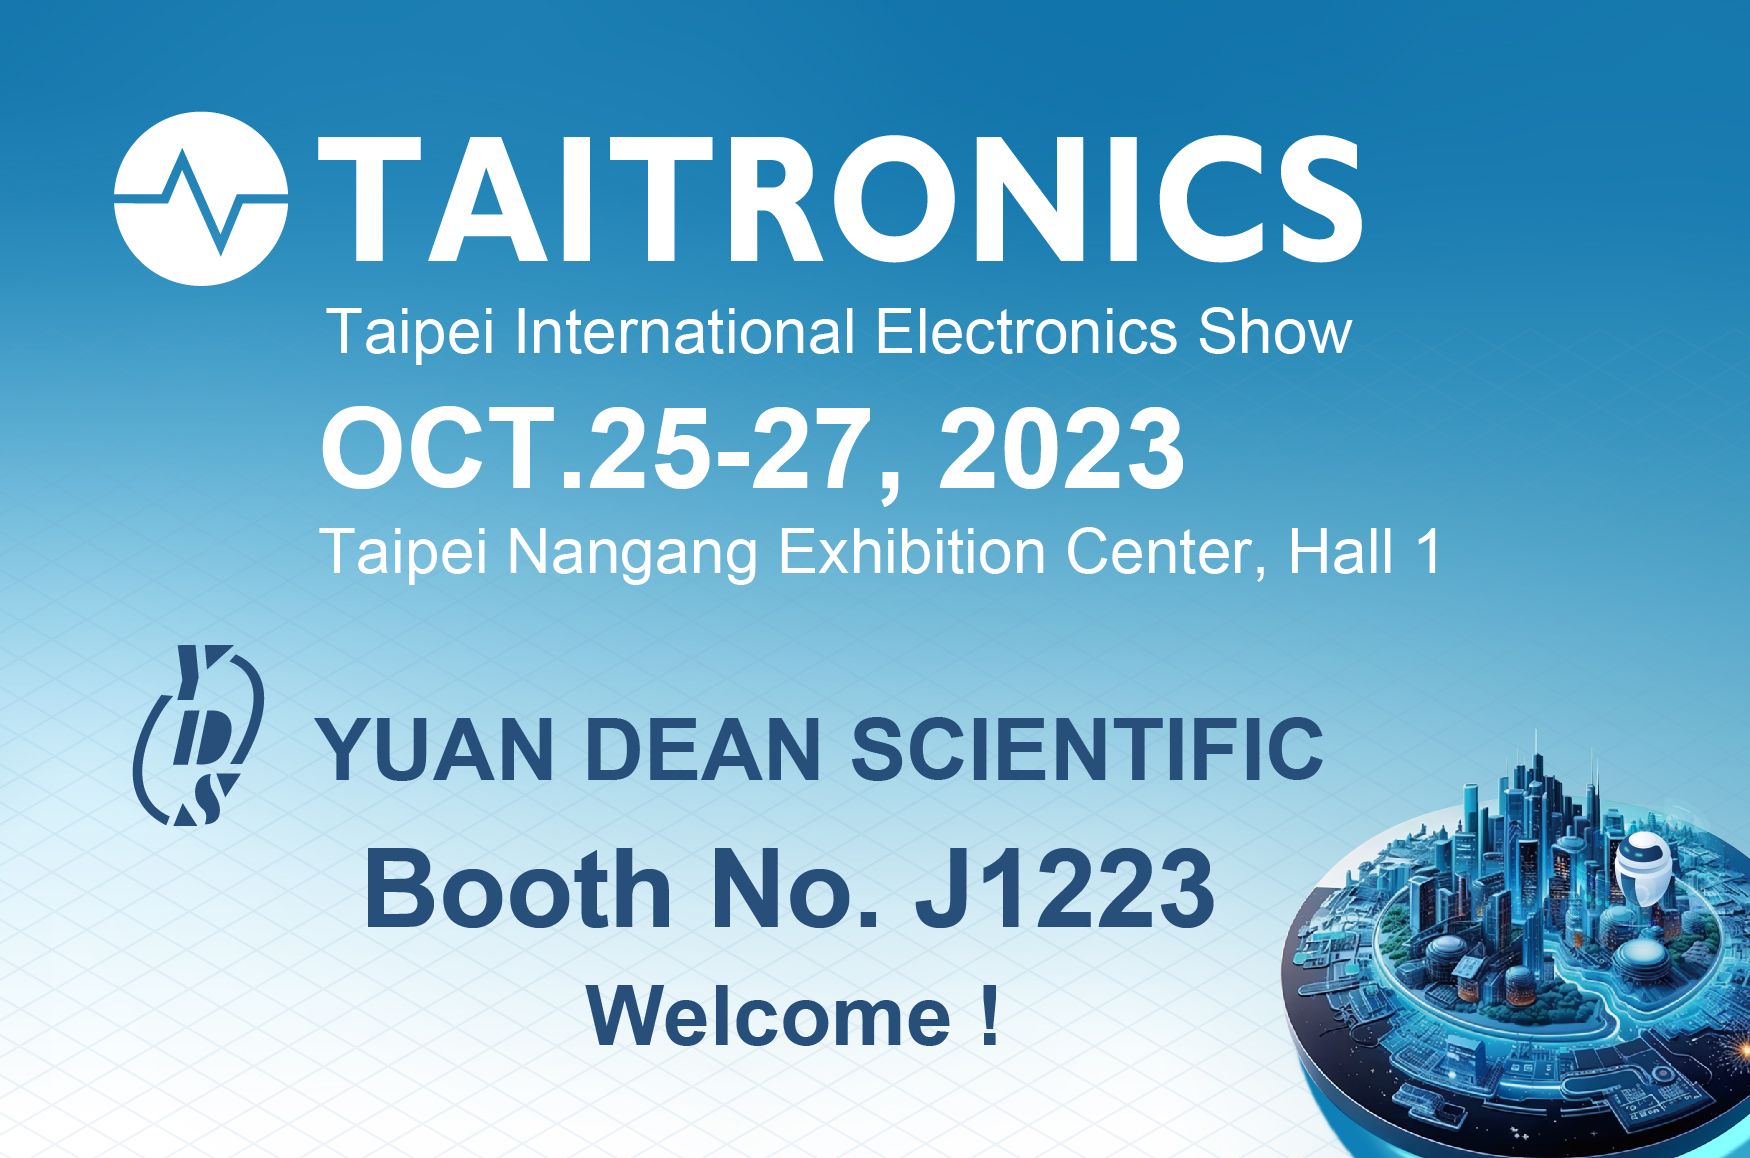 2023 TAITRONICS - ласкаво просимо відвідати стенд YUAN DEAN - J1223